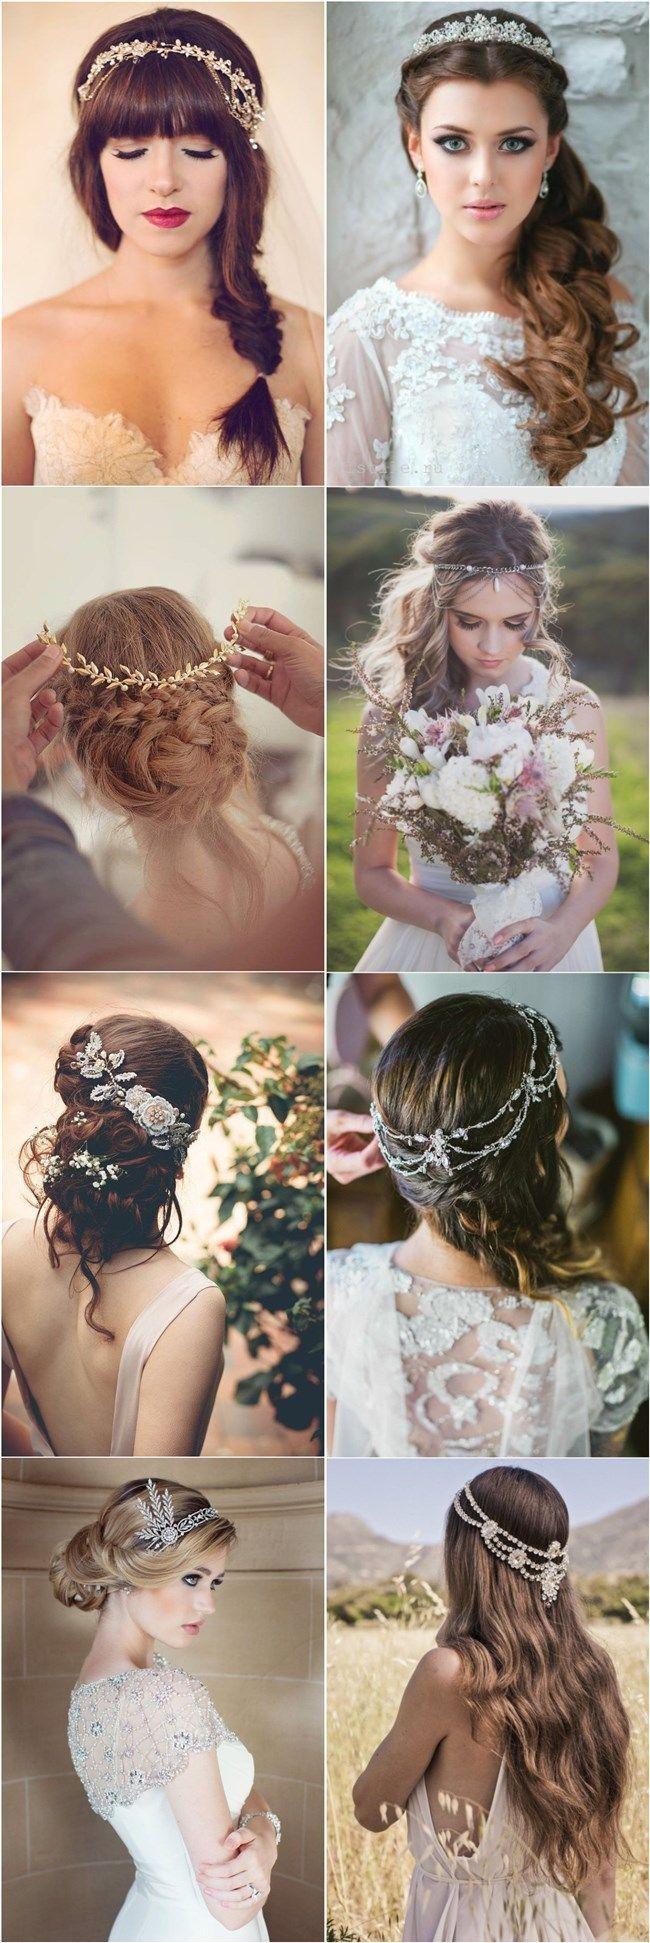 Hochzeit - 25 Amazing Wedding Hairstyles With Headpiece